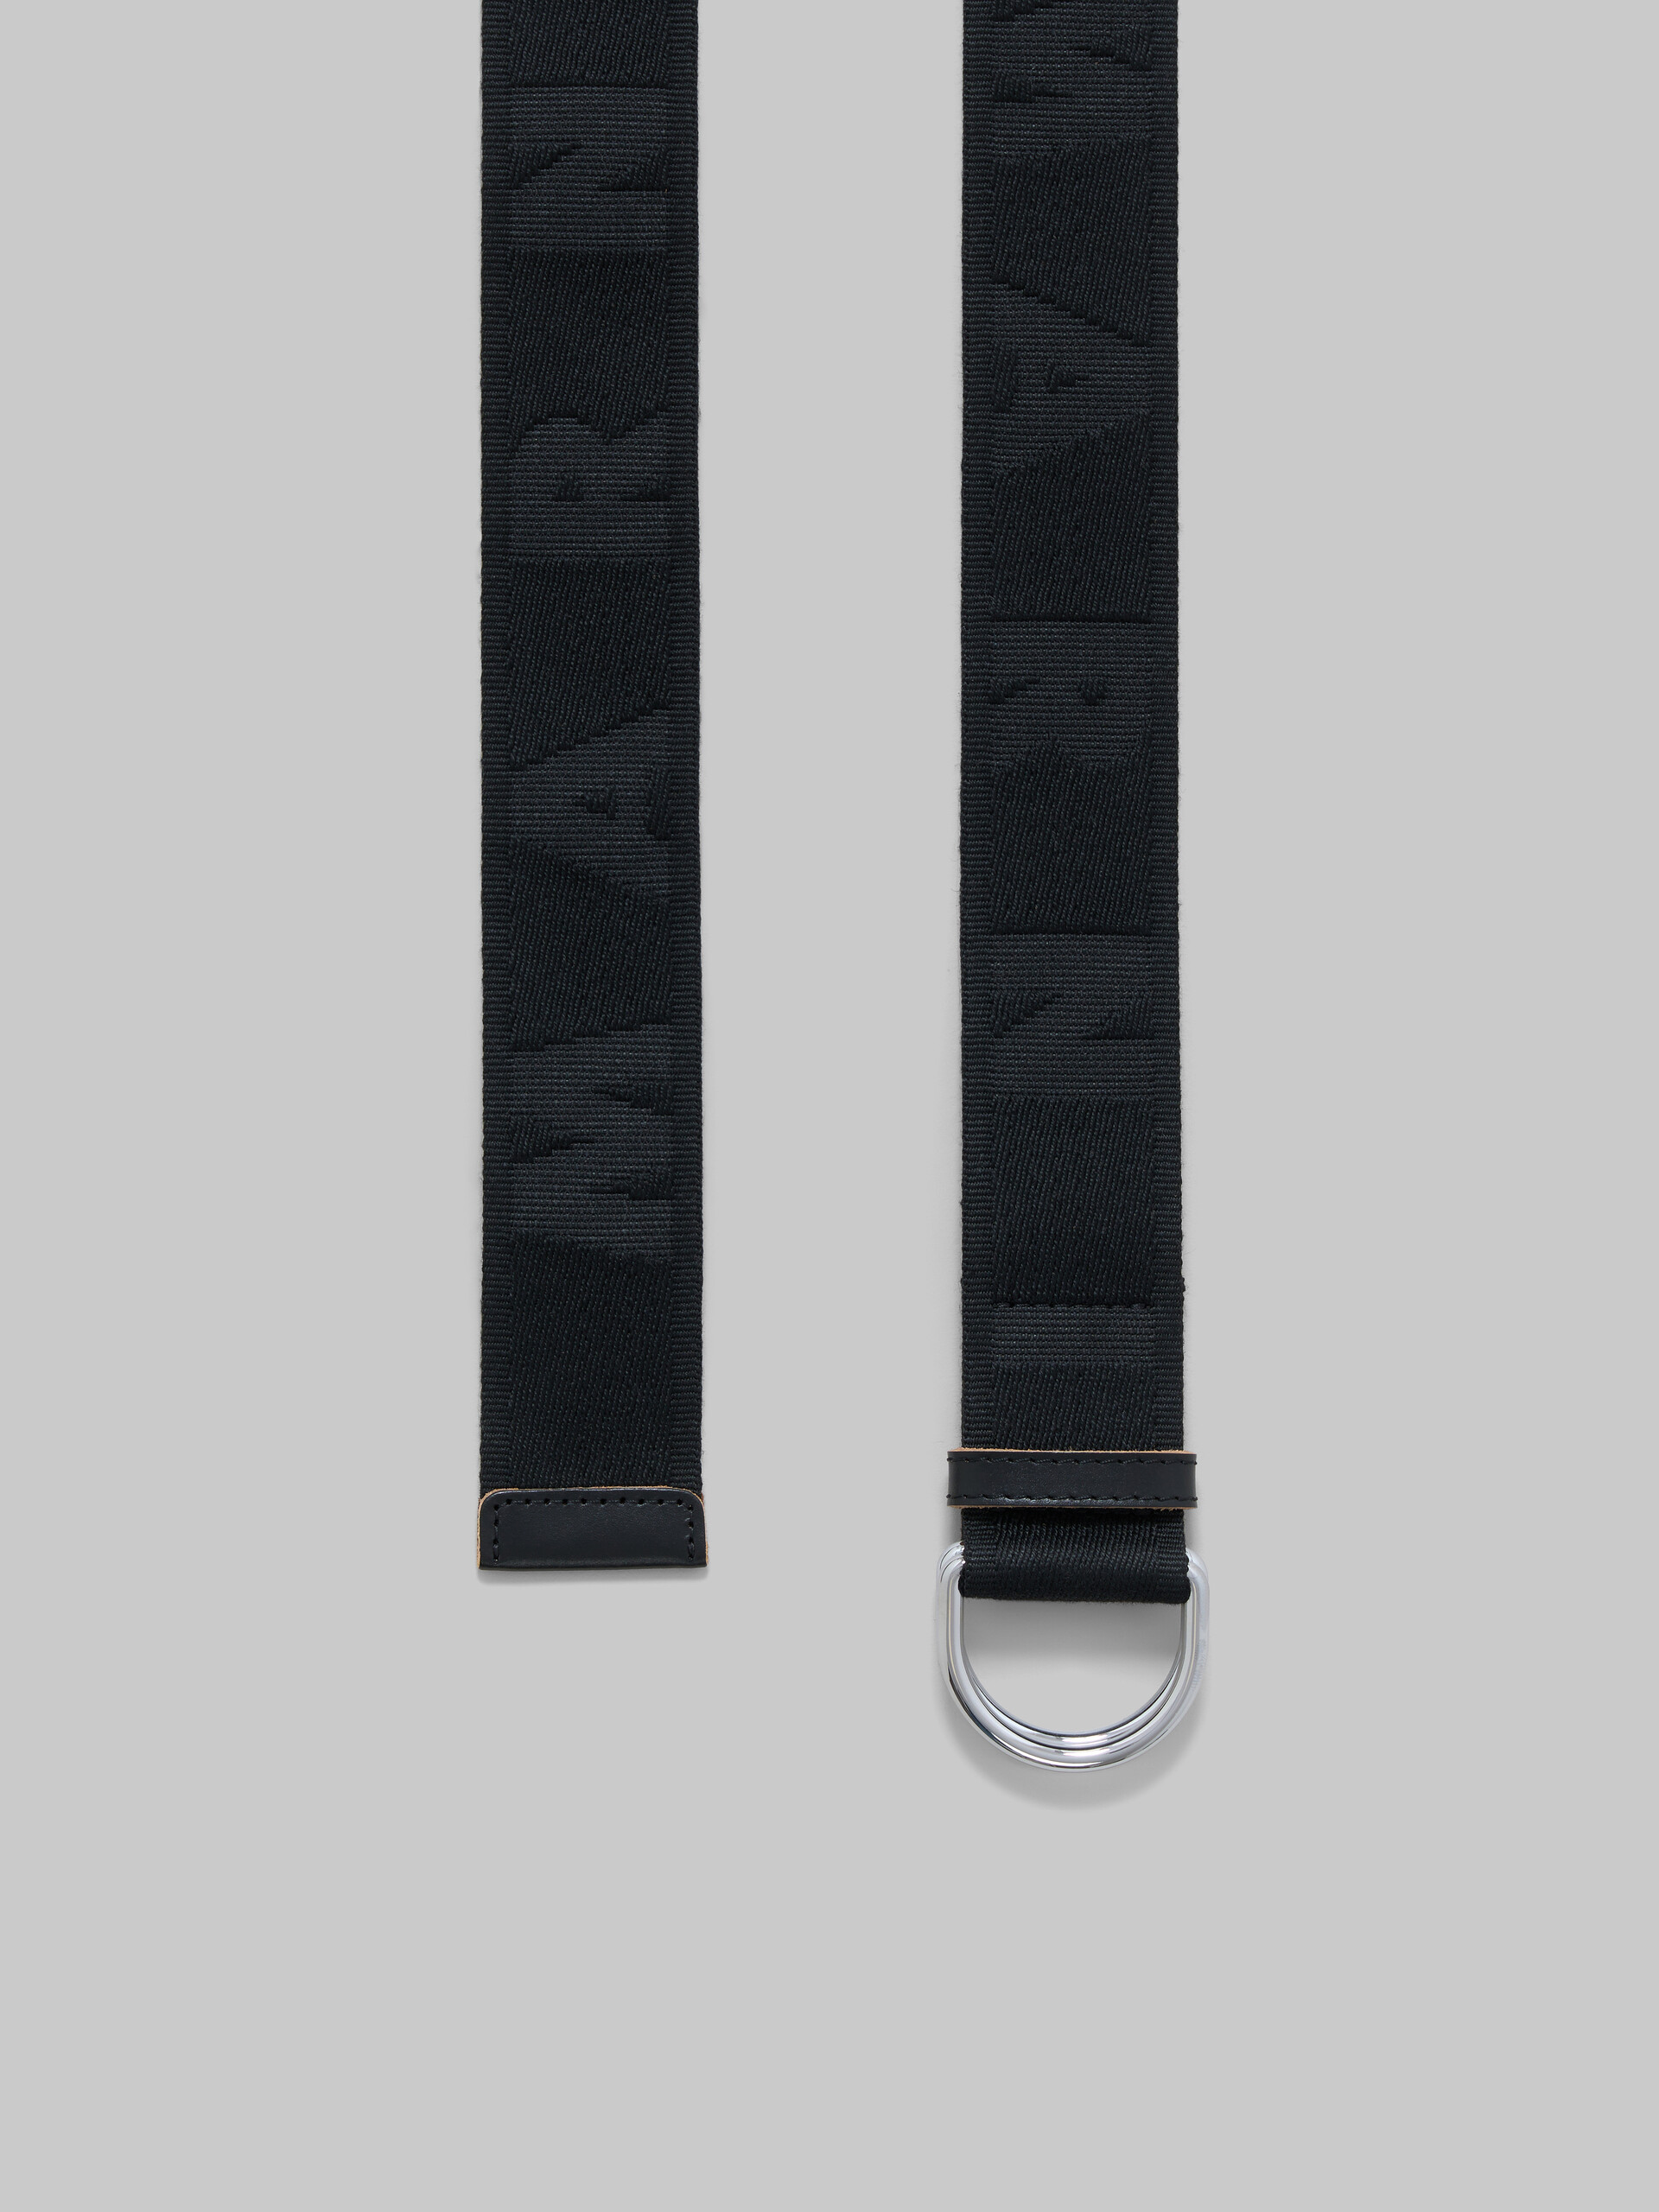 Cintura in nastro logato nero - Cintura - Image 3